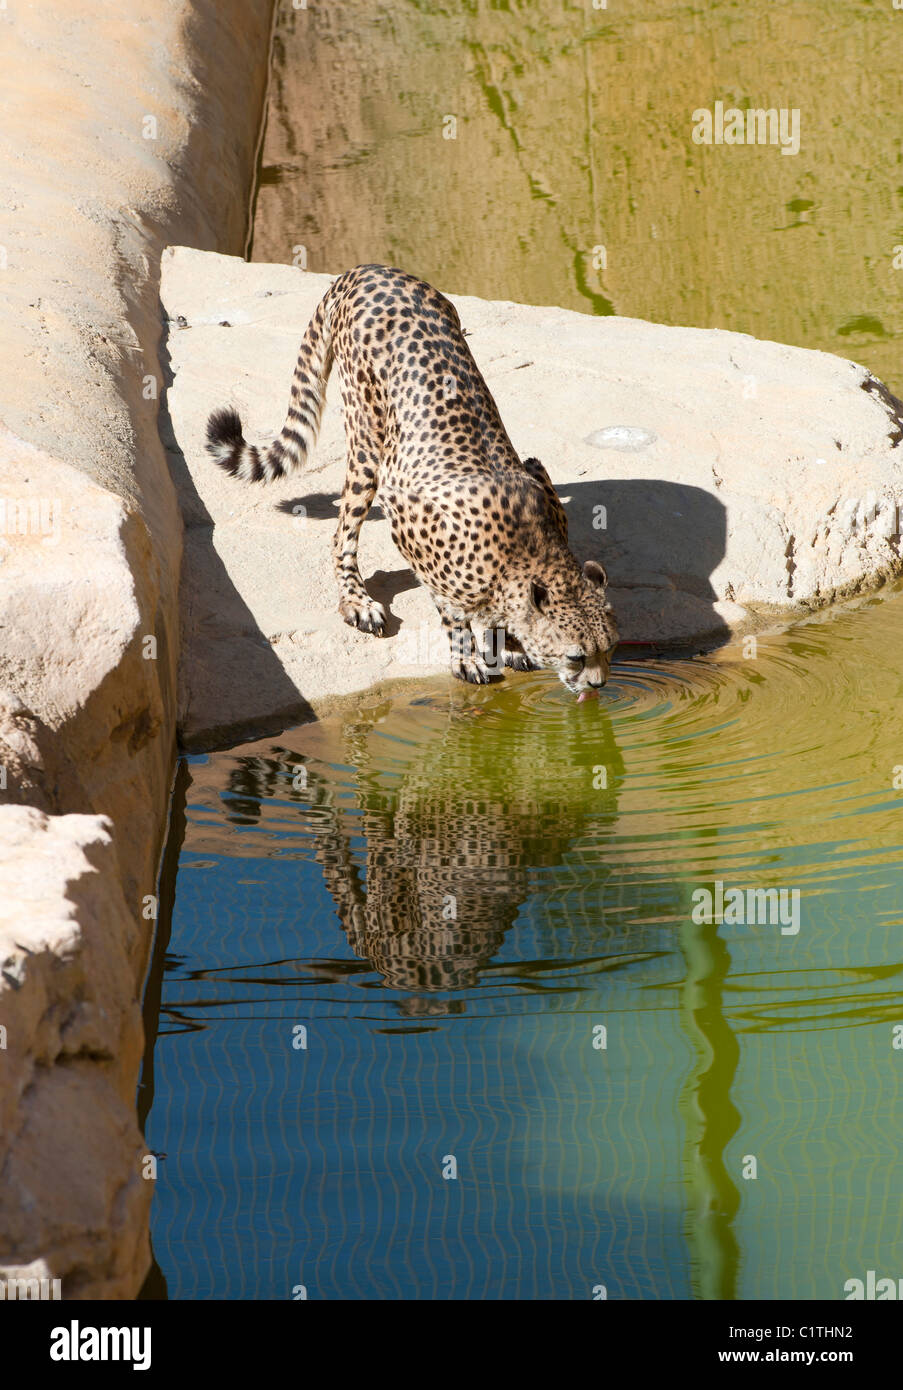 Cheetah drinking at a pond Stock Photo